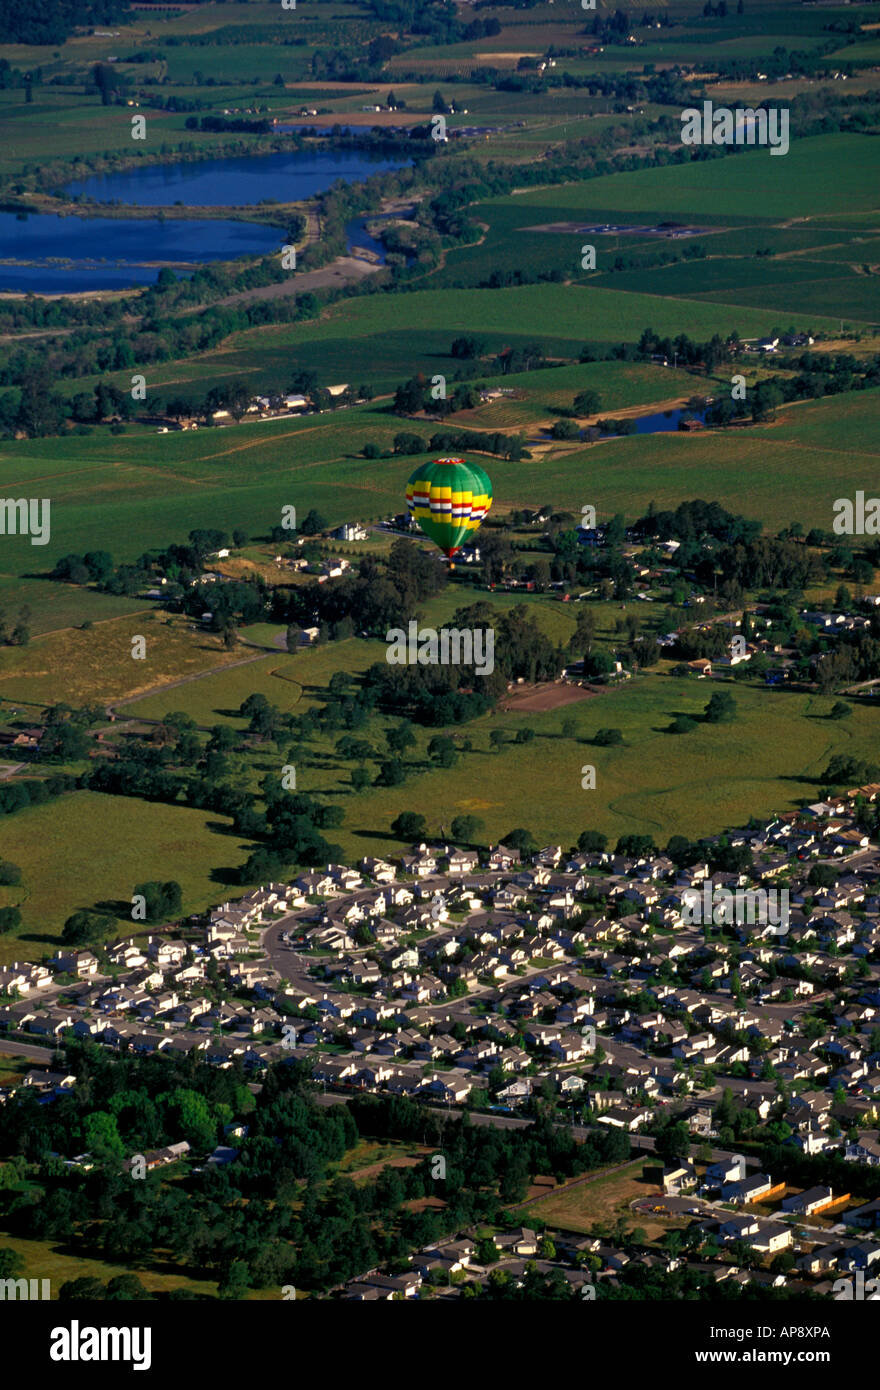 Balade en montgolfière, montgolfière, montgolfière, balloonist, montgolfière, aéronaute, près de Windsor et Santa Rosa, Sonoma County, Californie Banque D'Images